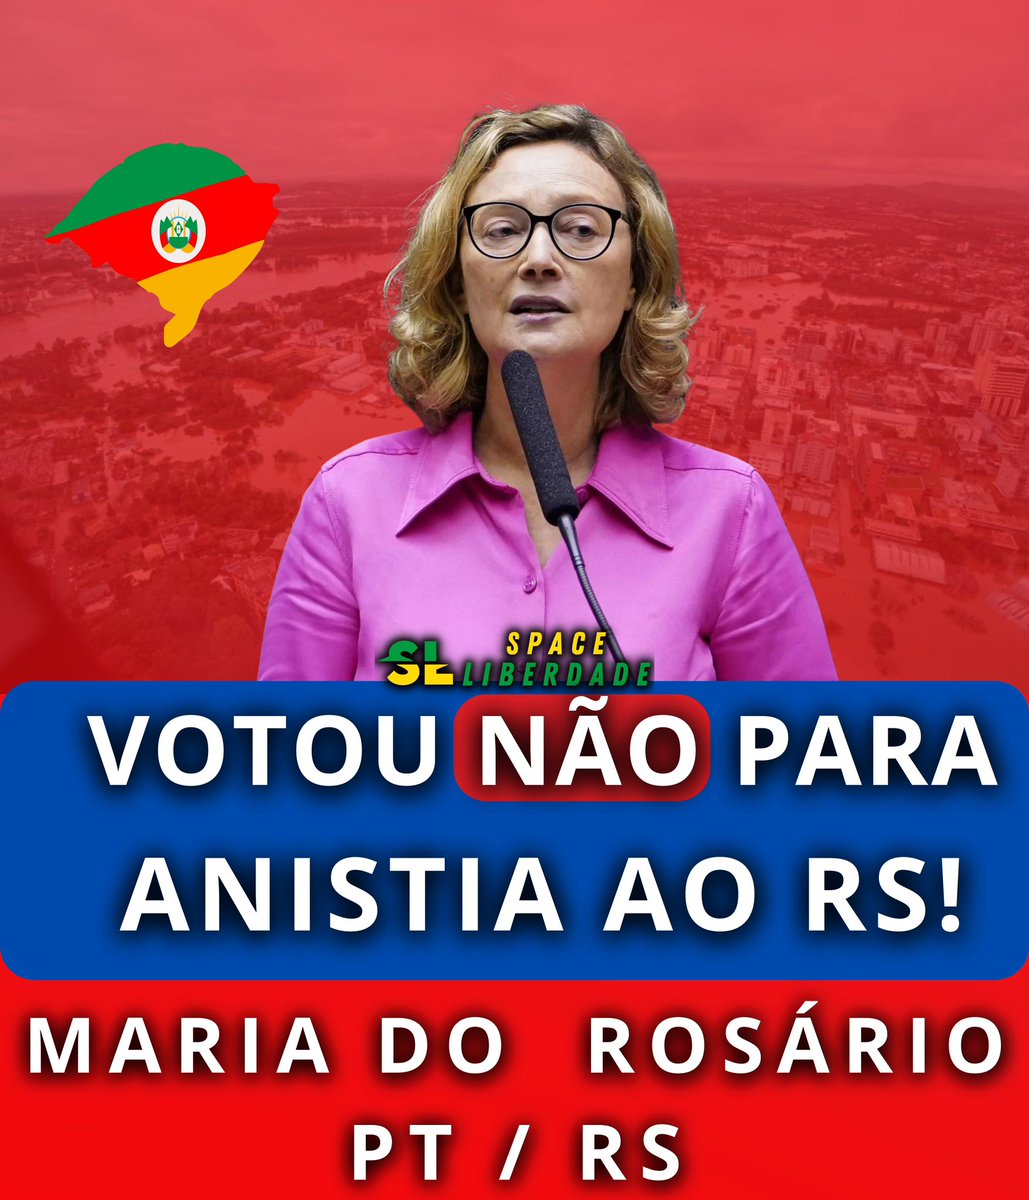 🚨 URGENTE - A Deputada gaúcha, Maria do Rosário,votou contra a anistia de 36 parcelas da dívida do RS, que tanto precisa de ajuda agora!

Ela não se importa com o povo que o elegeu! 

COBREM! @mariadorosario